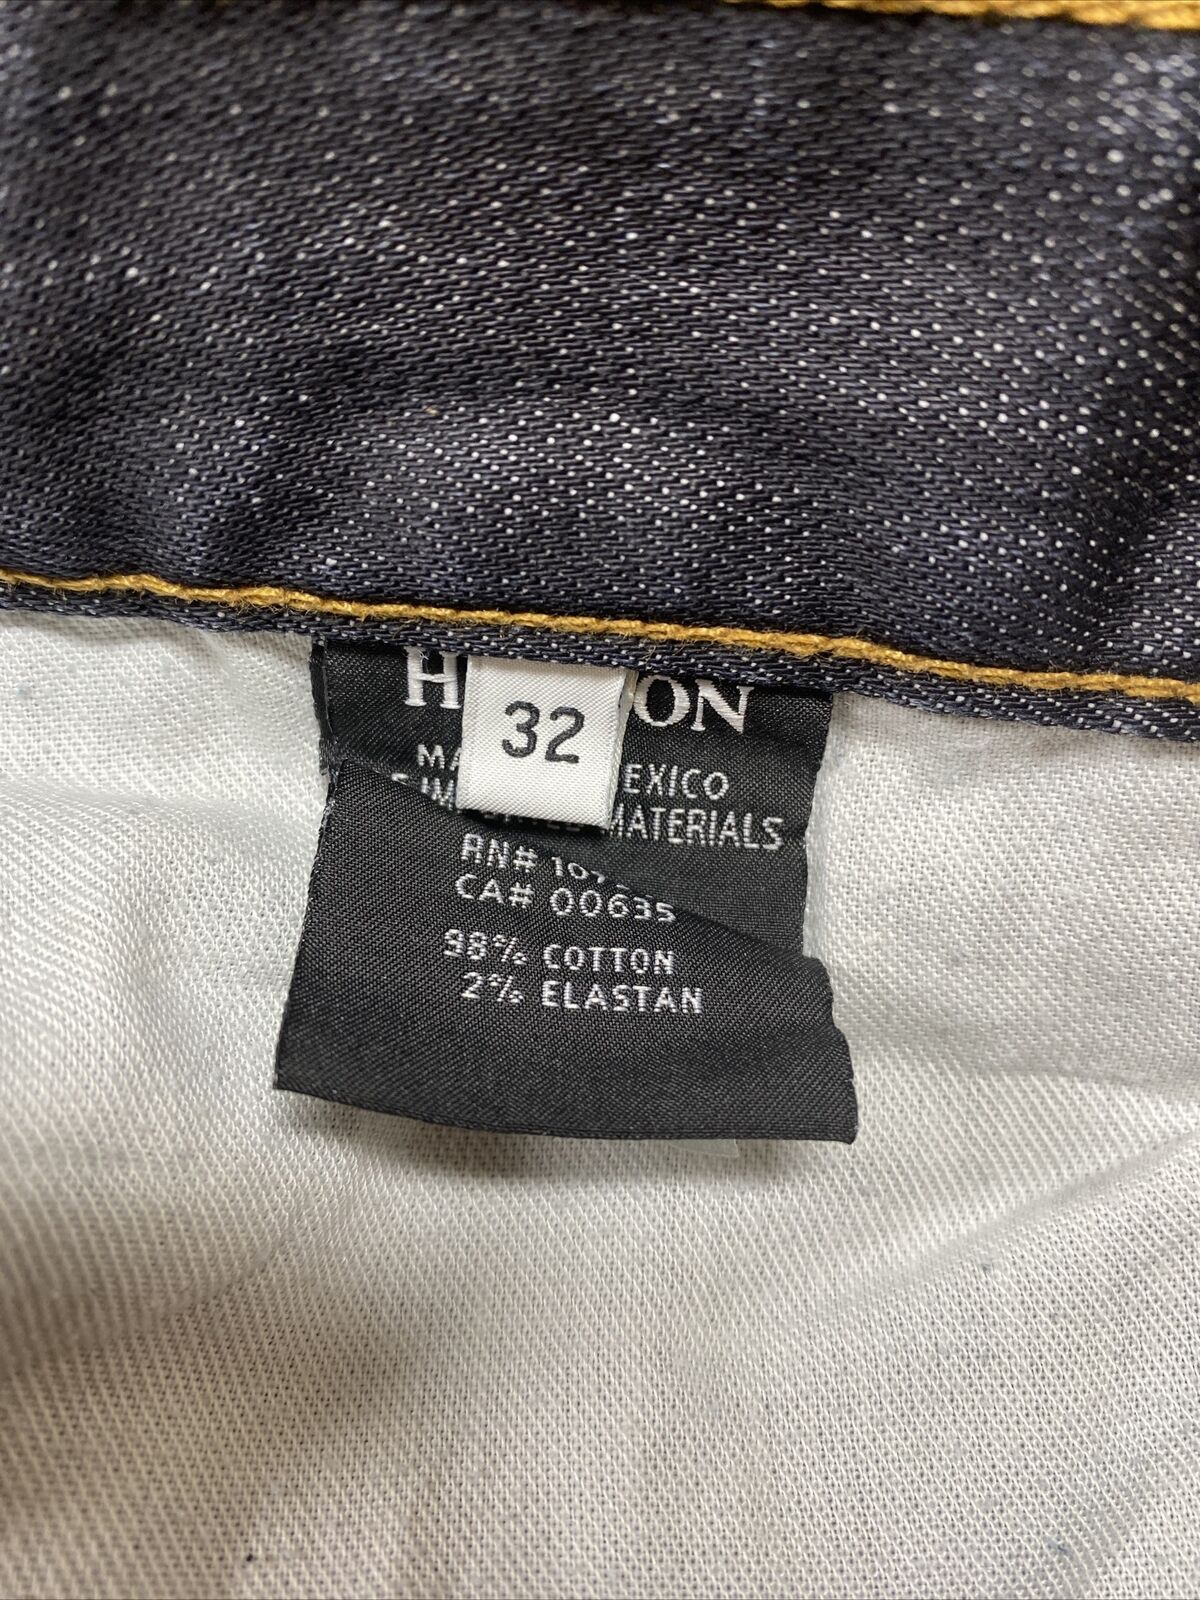 Hudson Men's Dark Wash Button Fly Straight Leg Denim Jeans - 32